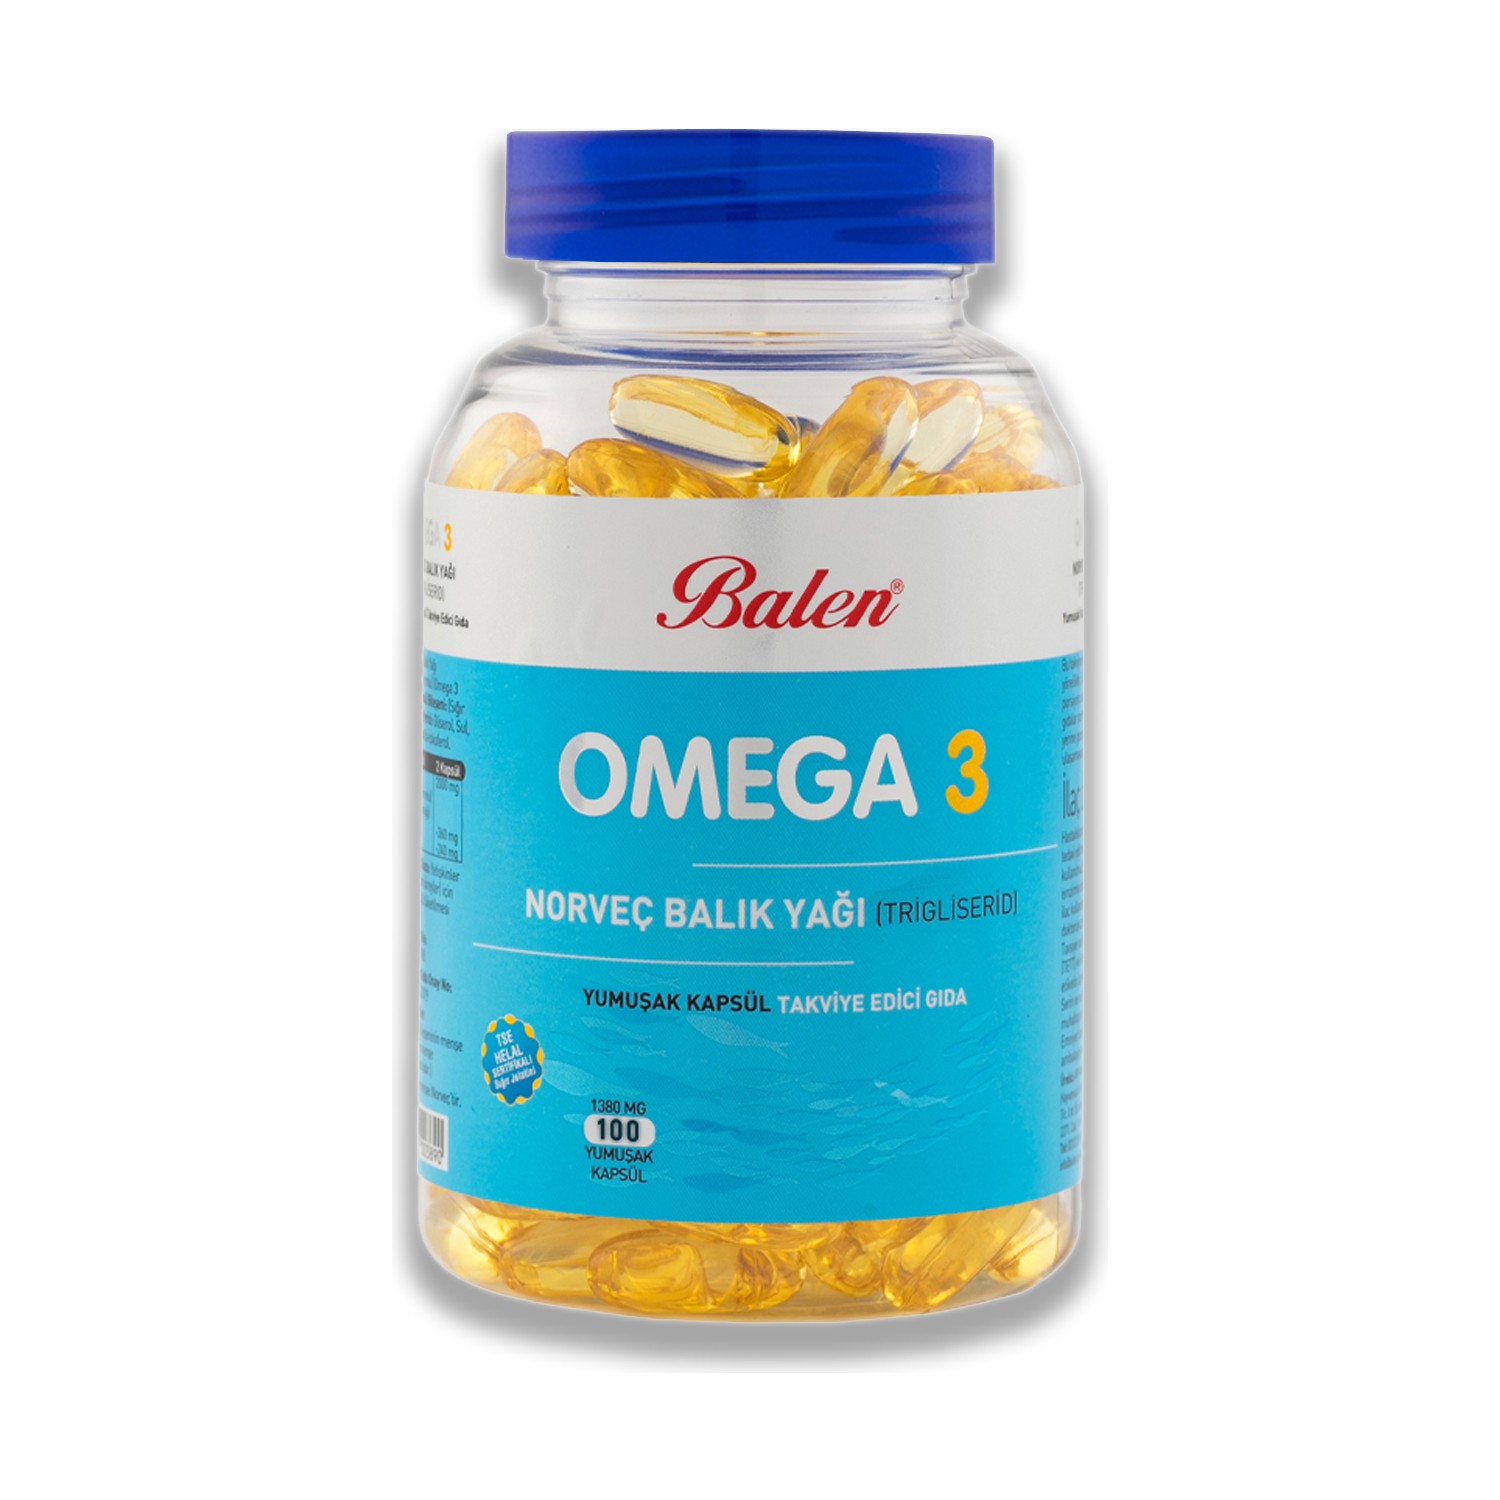 цена Омега-3 Balen 1380 мг, 100 капсул